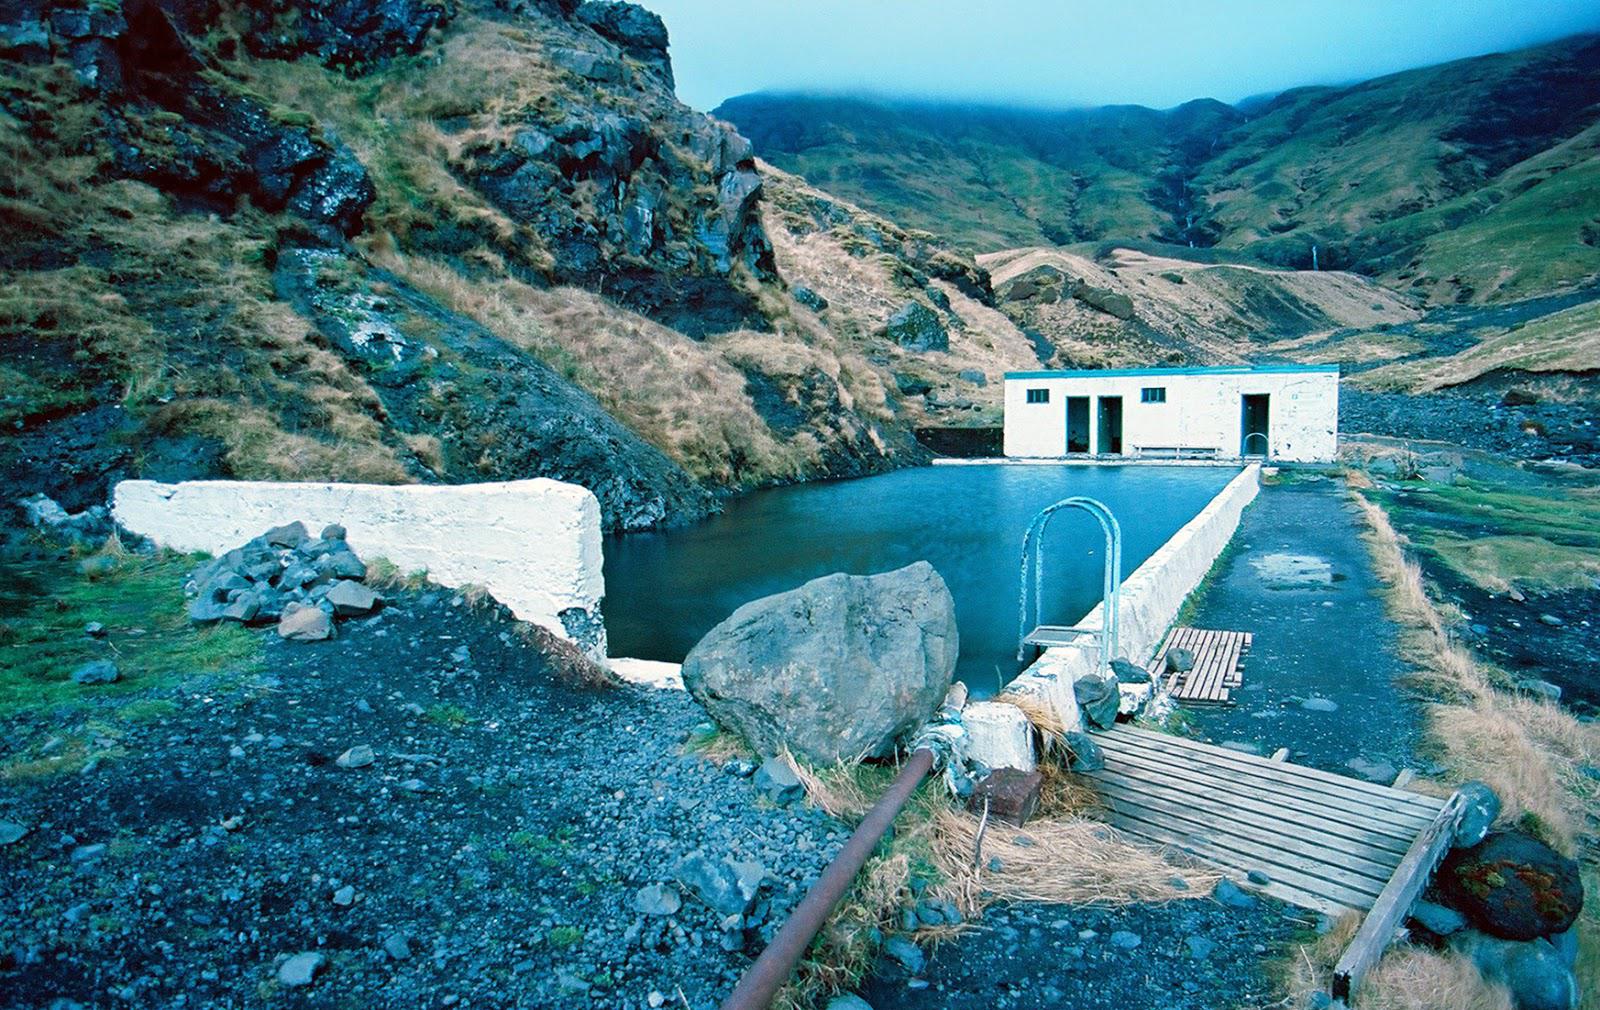 Aquí es donde tienes una piscina de aguas termales completa si tienes suerte de no encontrar otros visitantes.